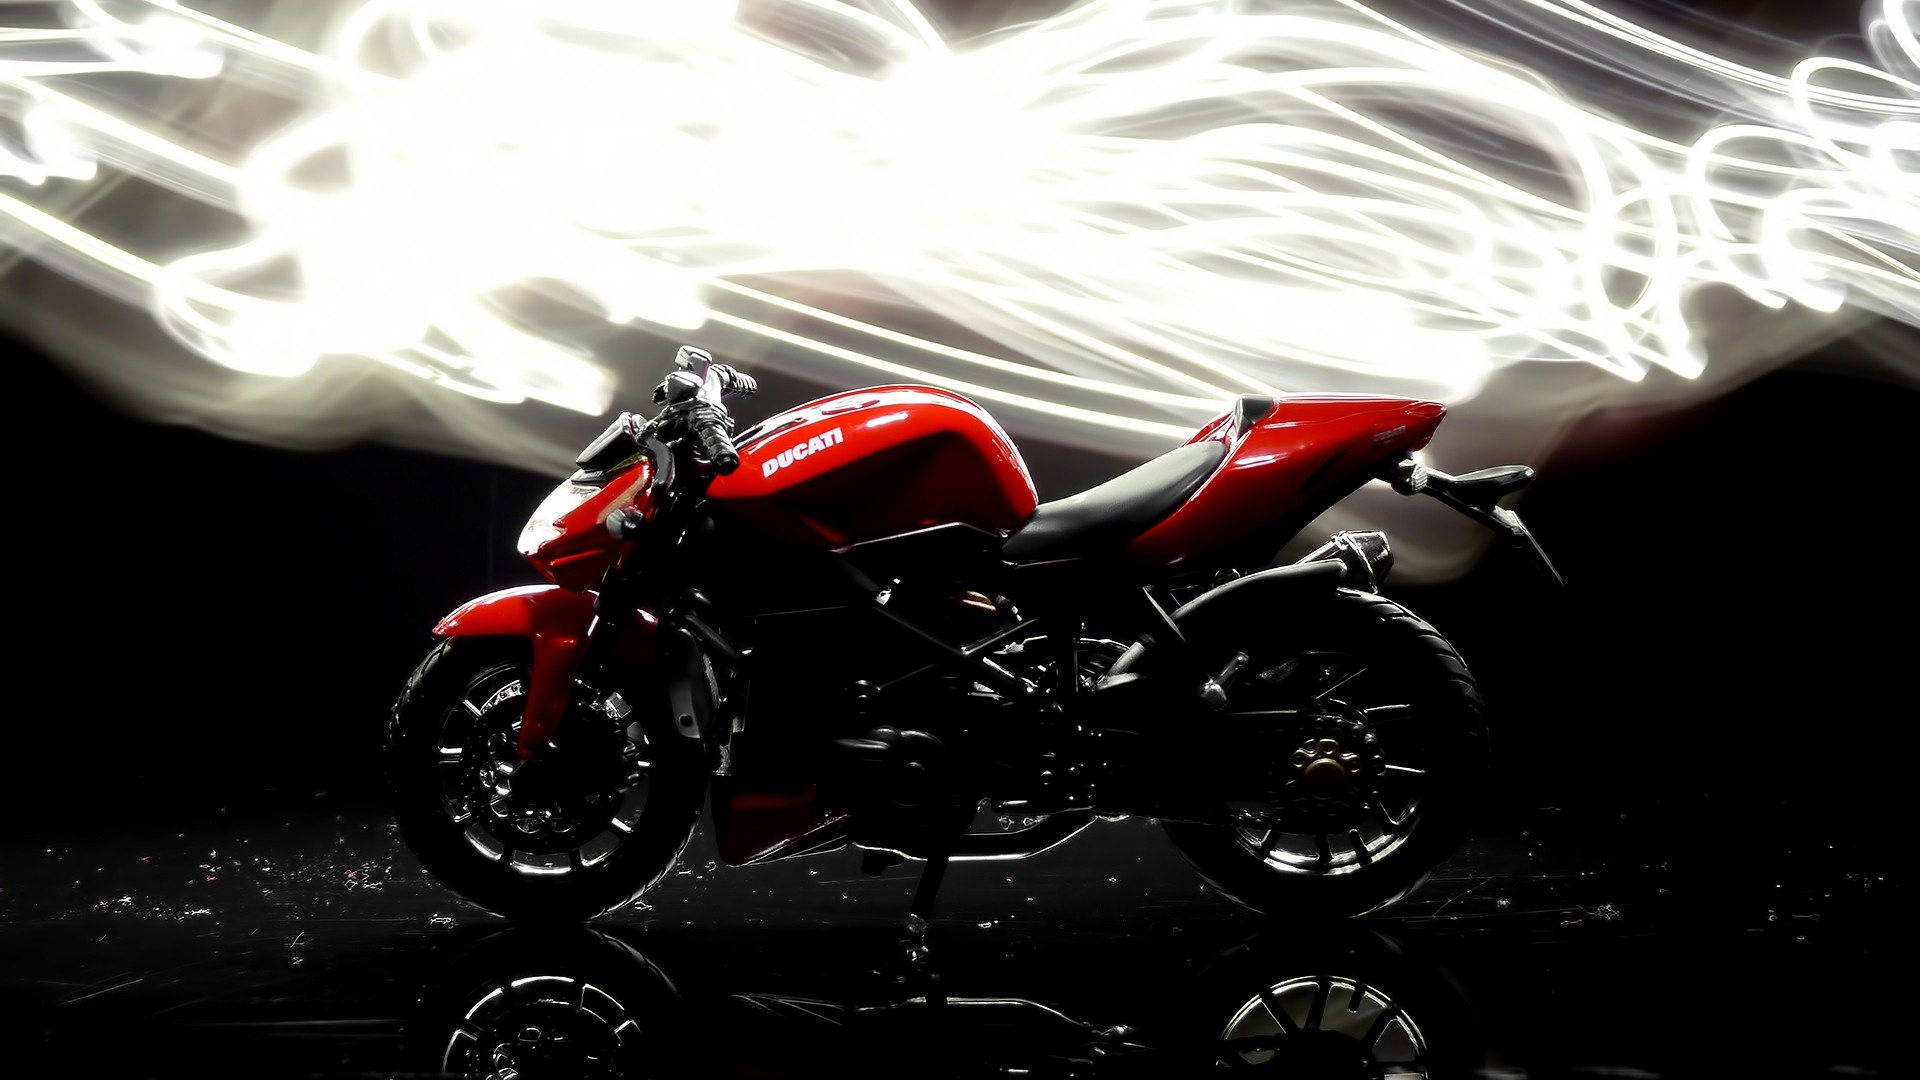 1920x1080 Hd Bikes Red Ducati 1199 Wallpaper